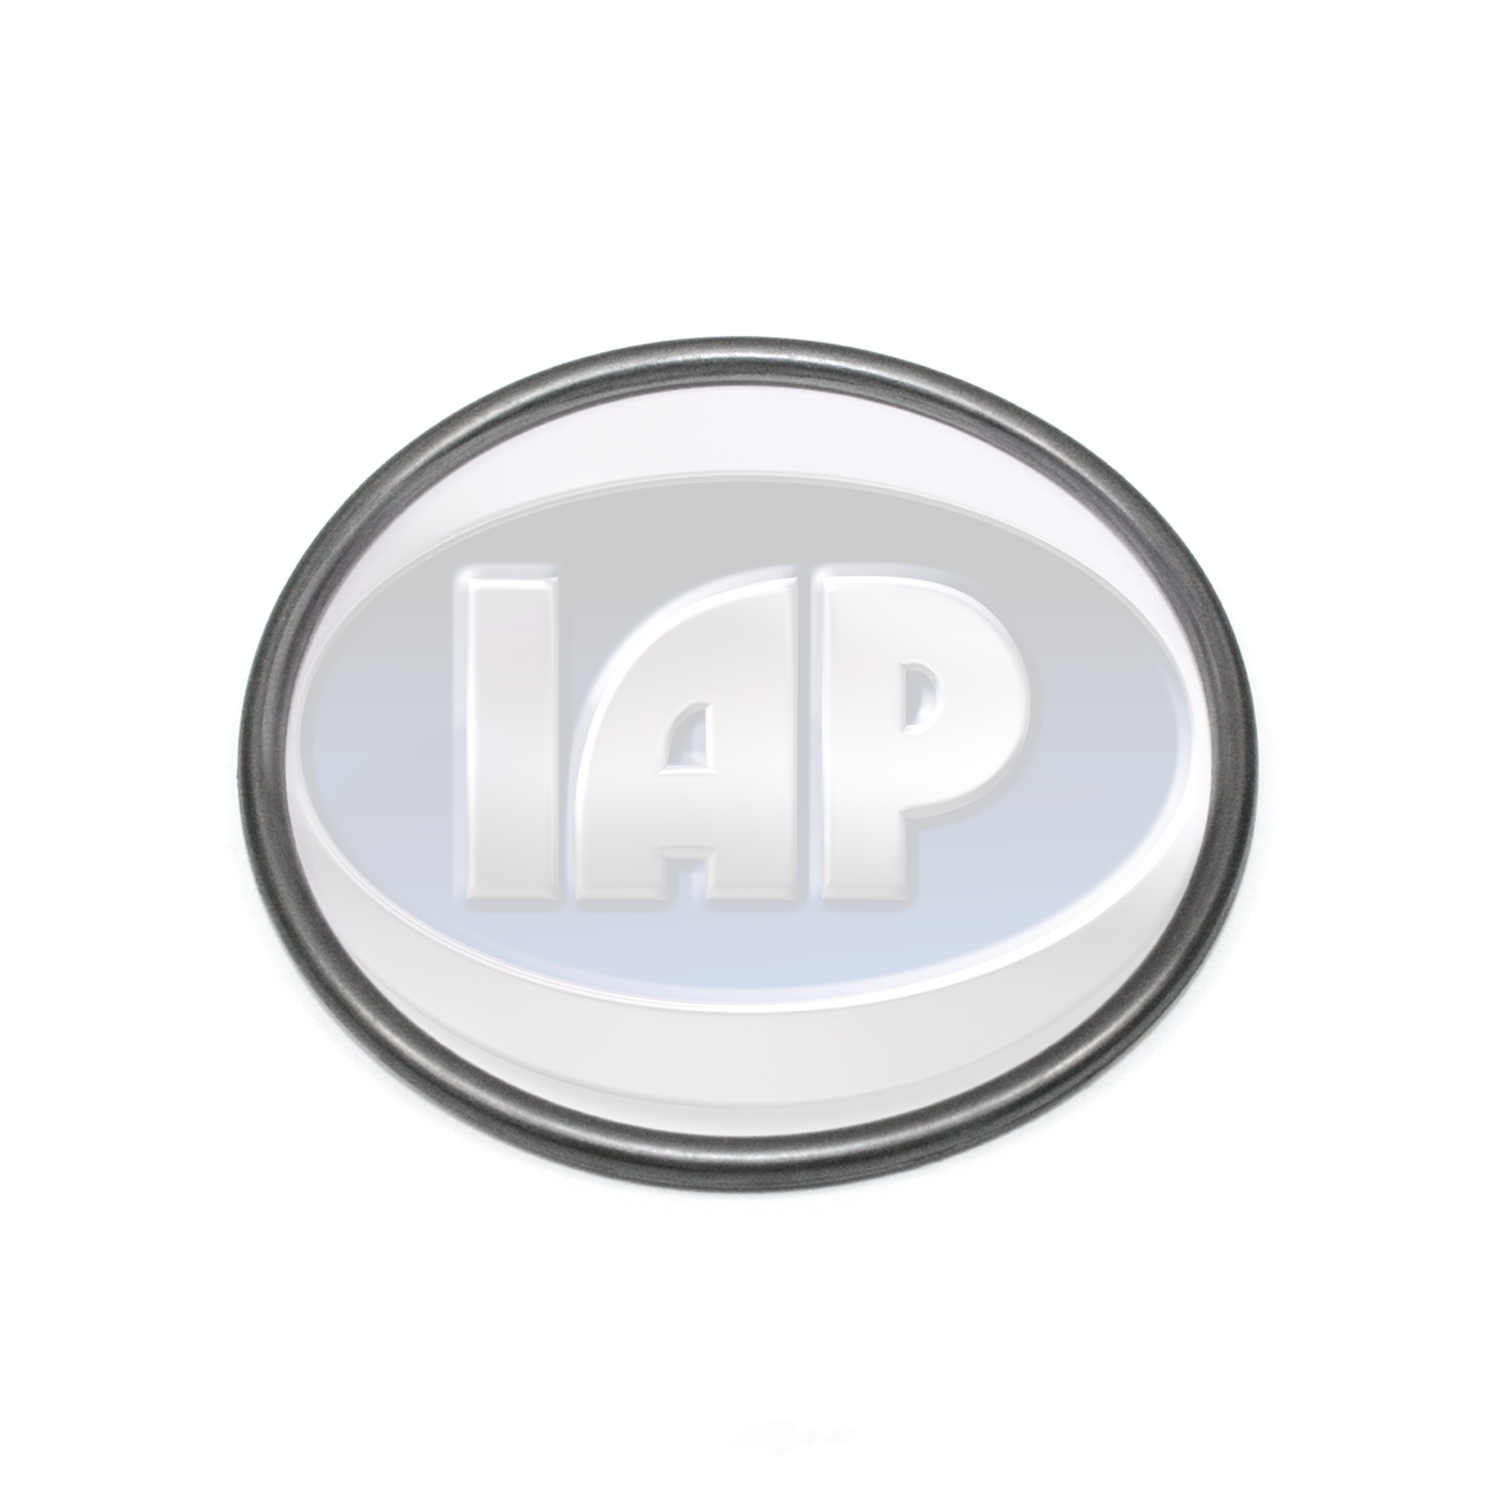 IAP/KUHLTEK MOTORWERKS - Clutch Flywheel O-Ring - KMS 021105279